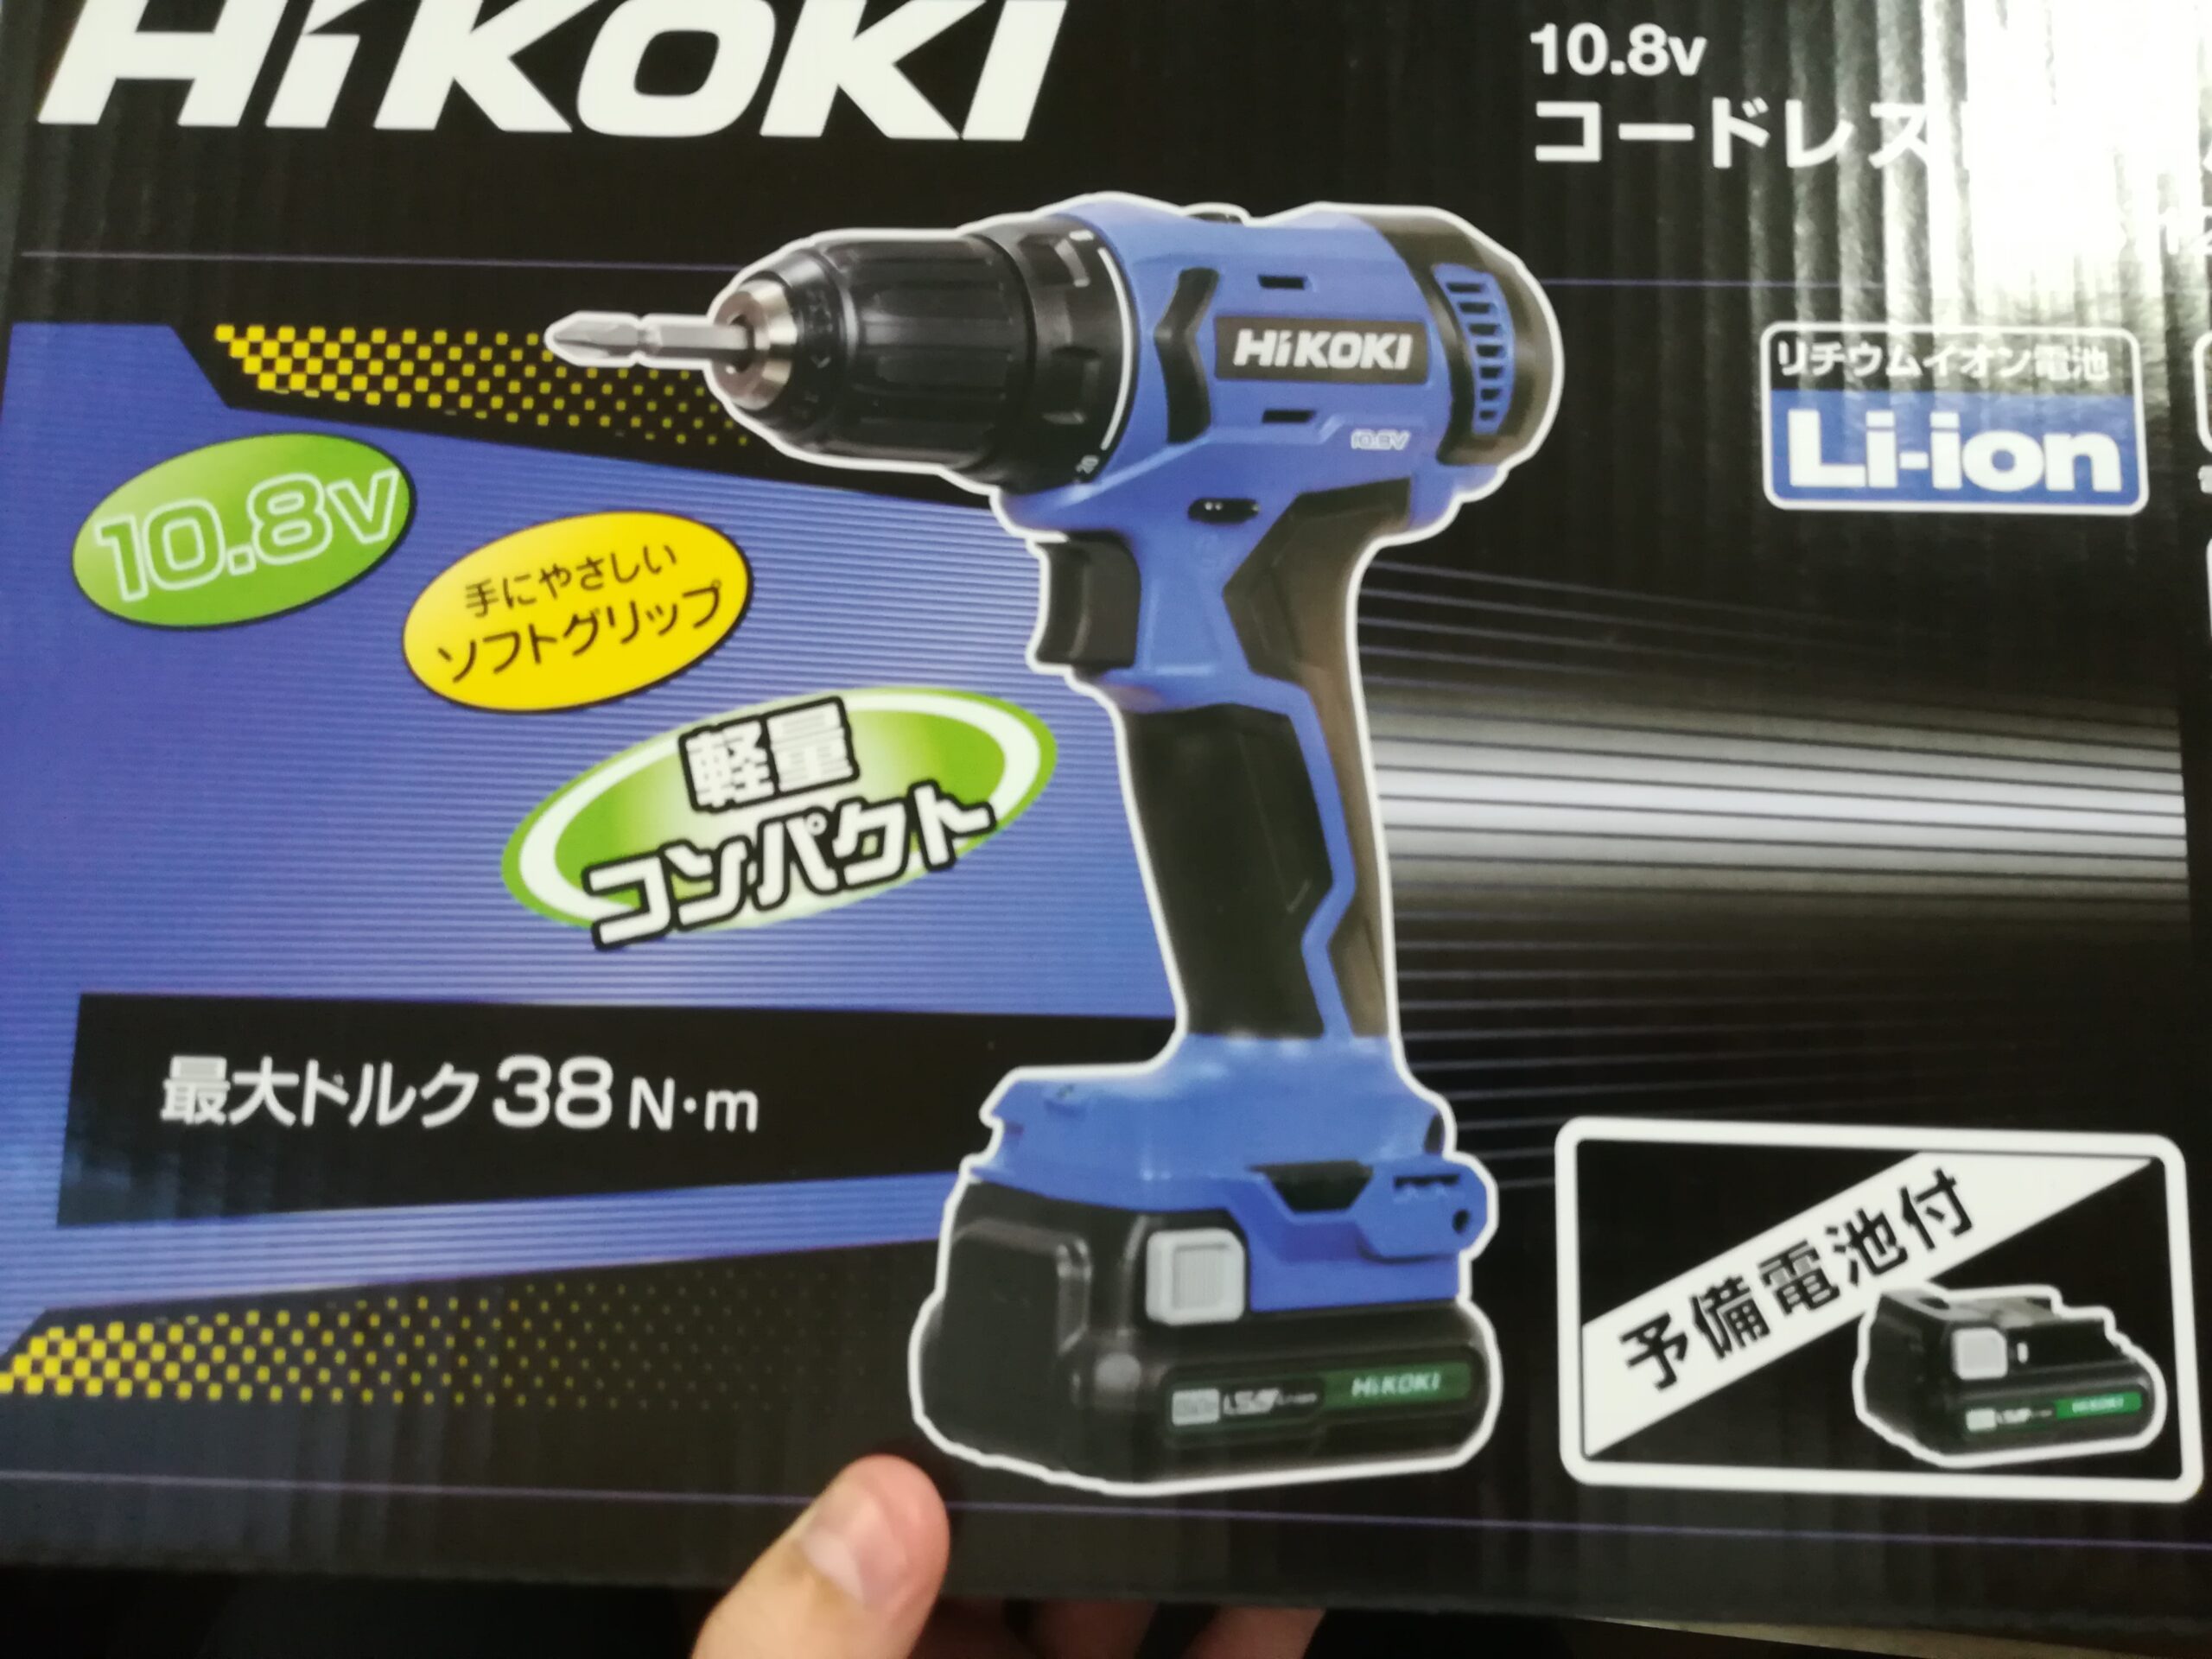 2994円 【超お買い得！】 HiKOKI ハイコーキ 10.8V コードレスドライバドリル FDS12DAL 2ES